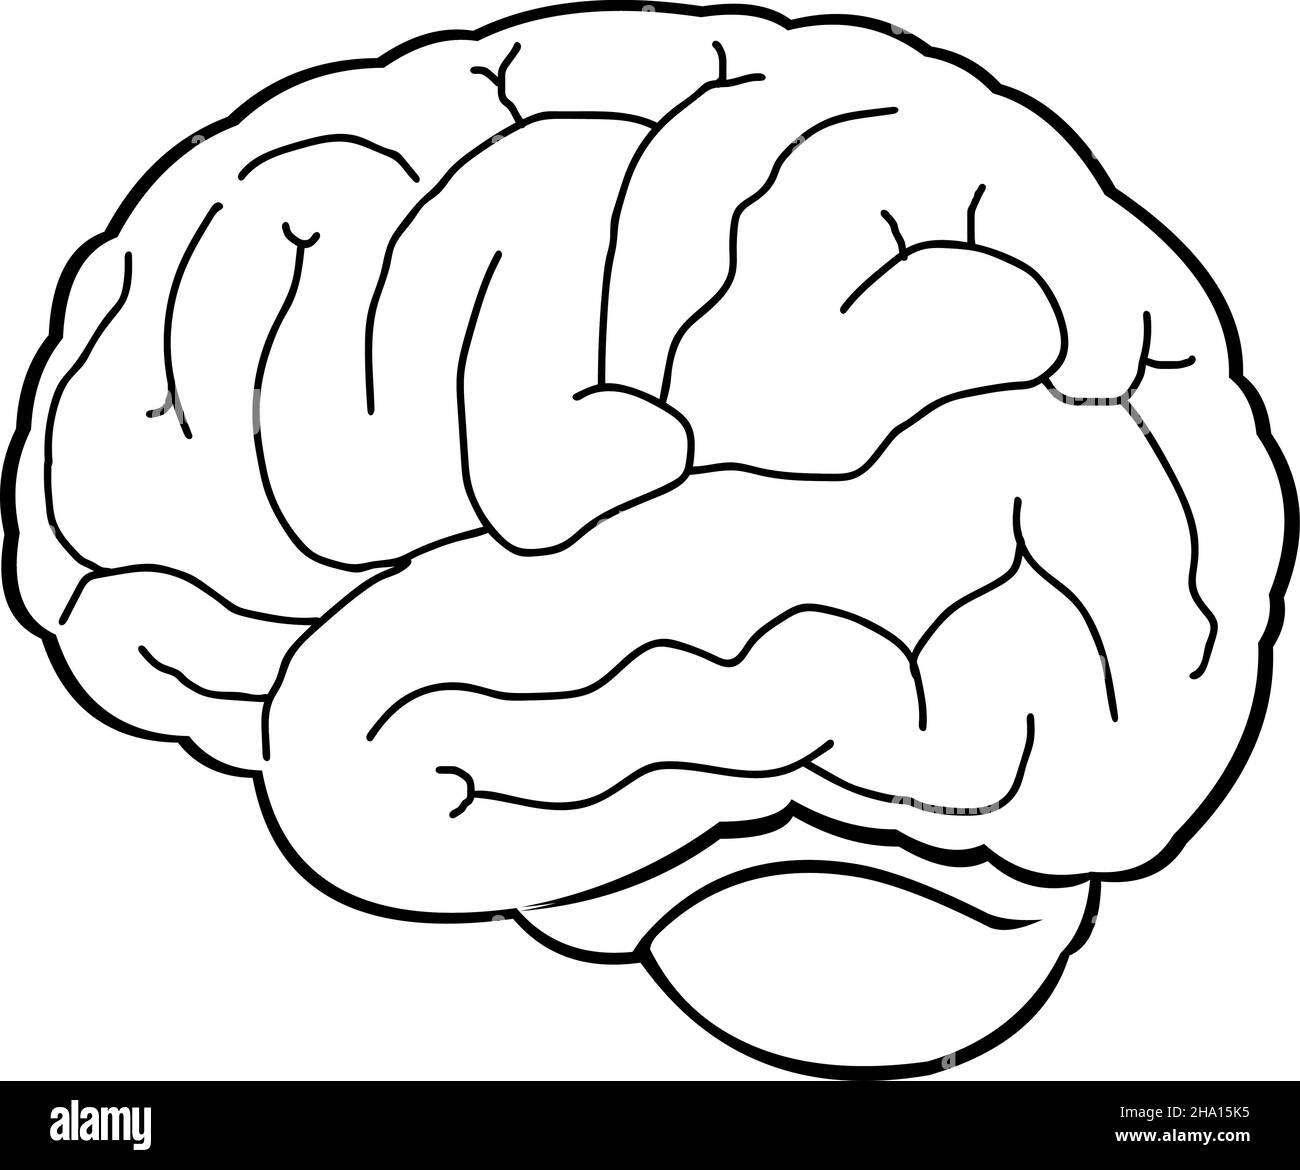 Vektor-Illustration eines Gehirns in schwarz-weiß gezeichnet Stock Vektor